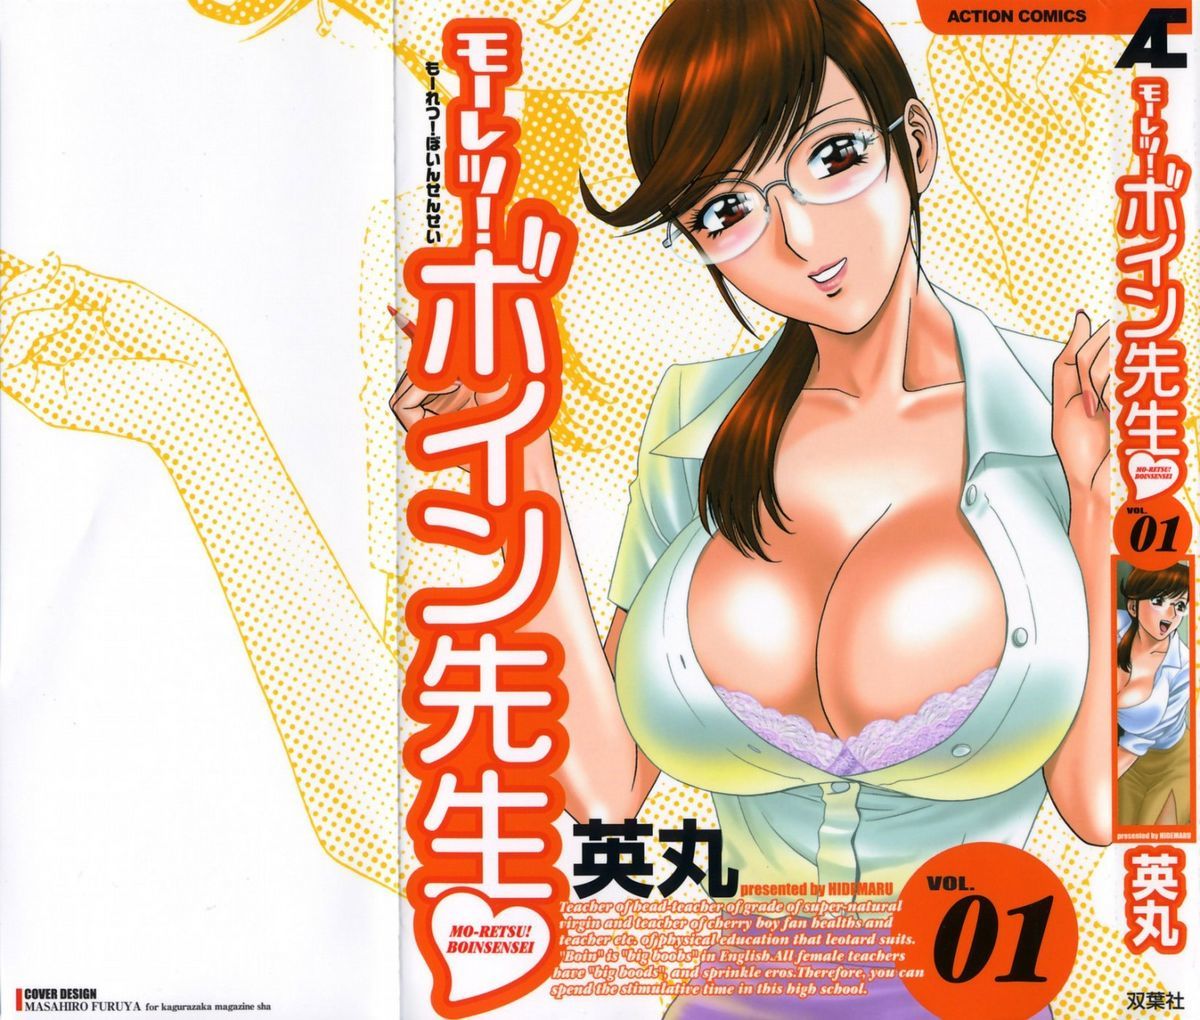 Mo-Retsu! Boin SenseiVol.1 hentai manga